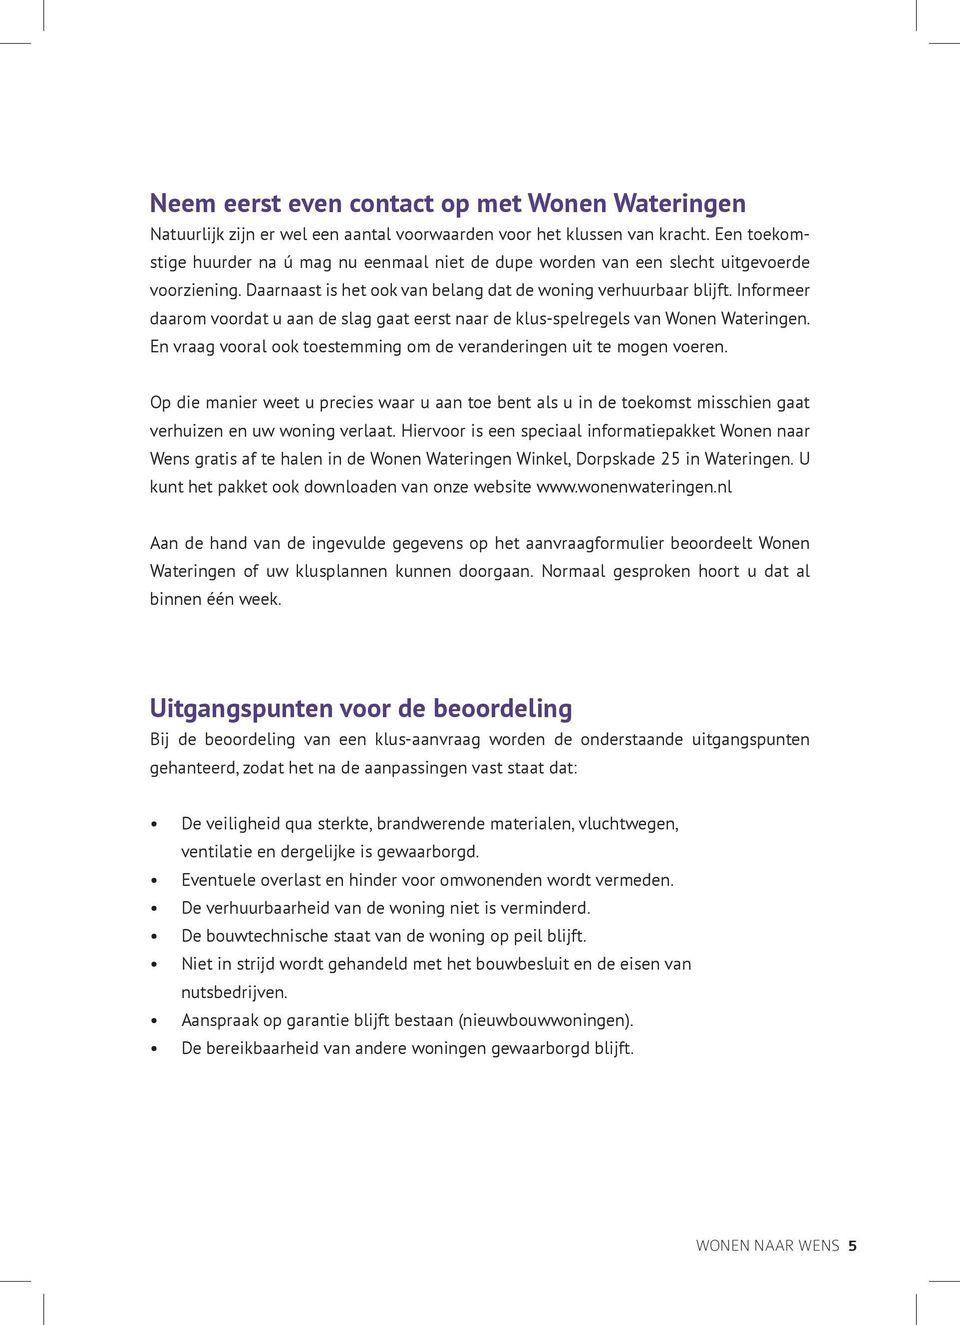 Informeer daarom voordat u aan de slag gaat eerst naar de klus-spelregels van Wonen Wateringen. En vraag vooral ook toestemming om de veranderingen uit te mogen voeren.